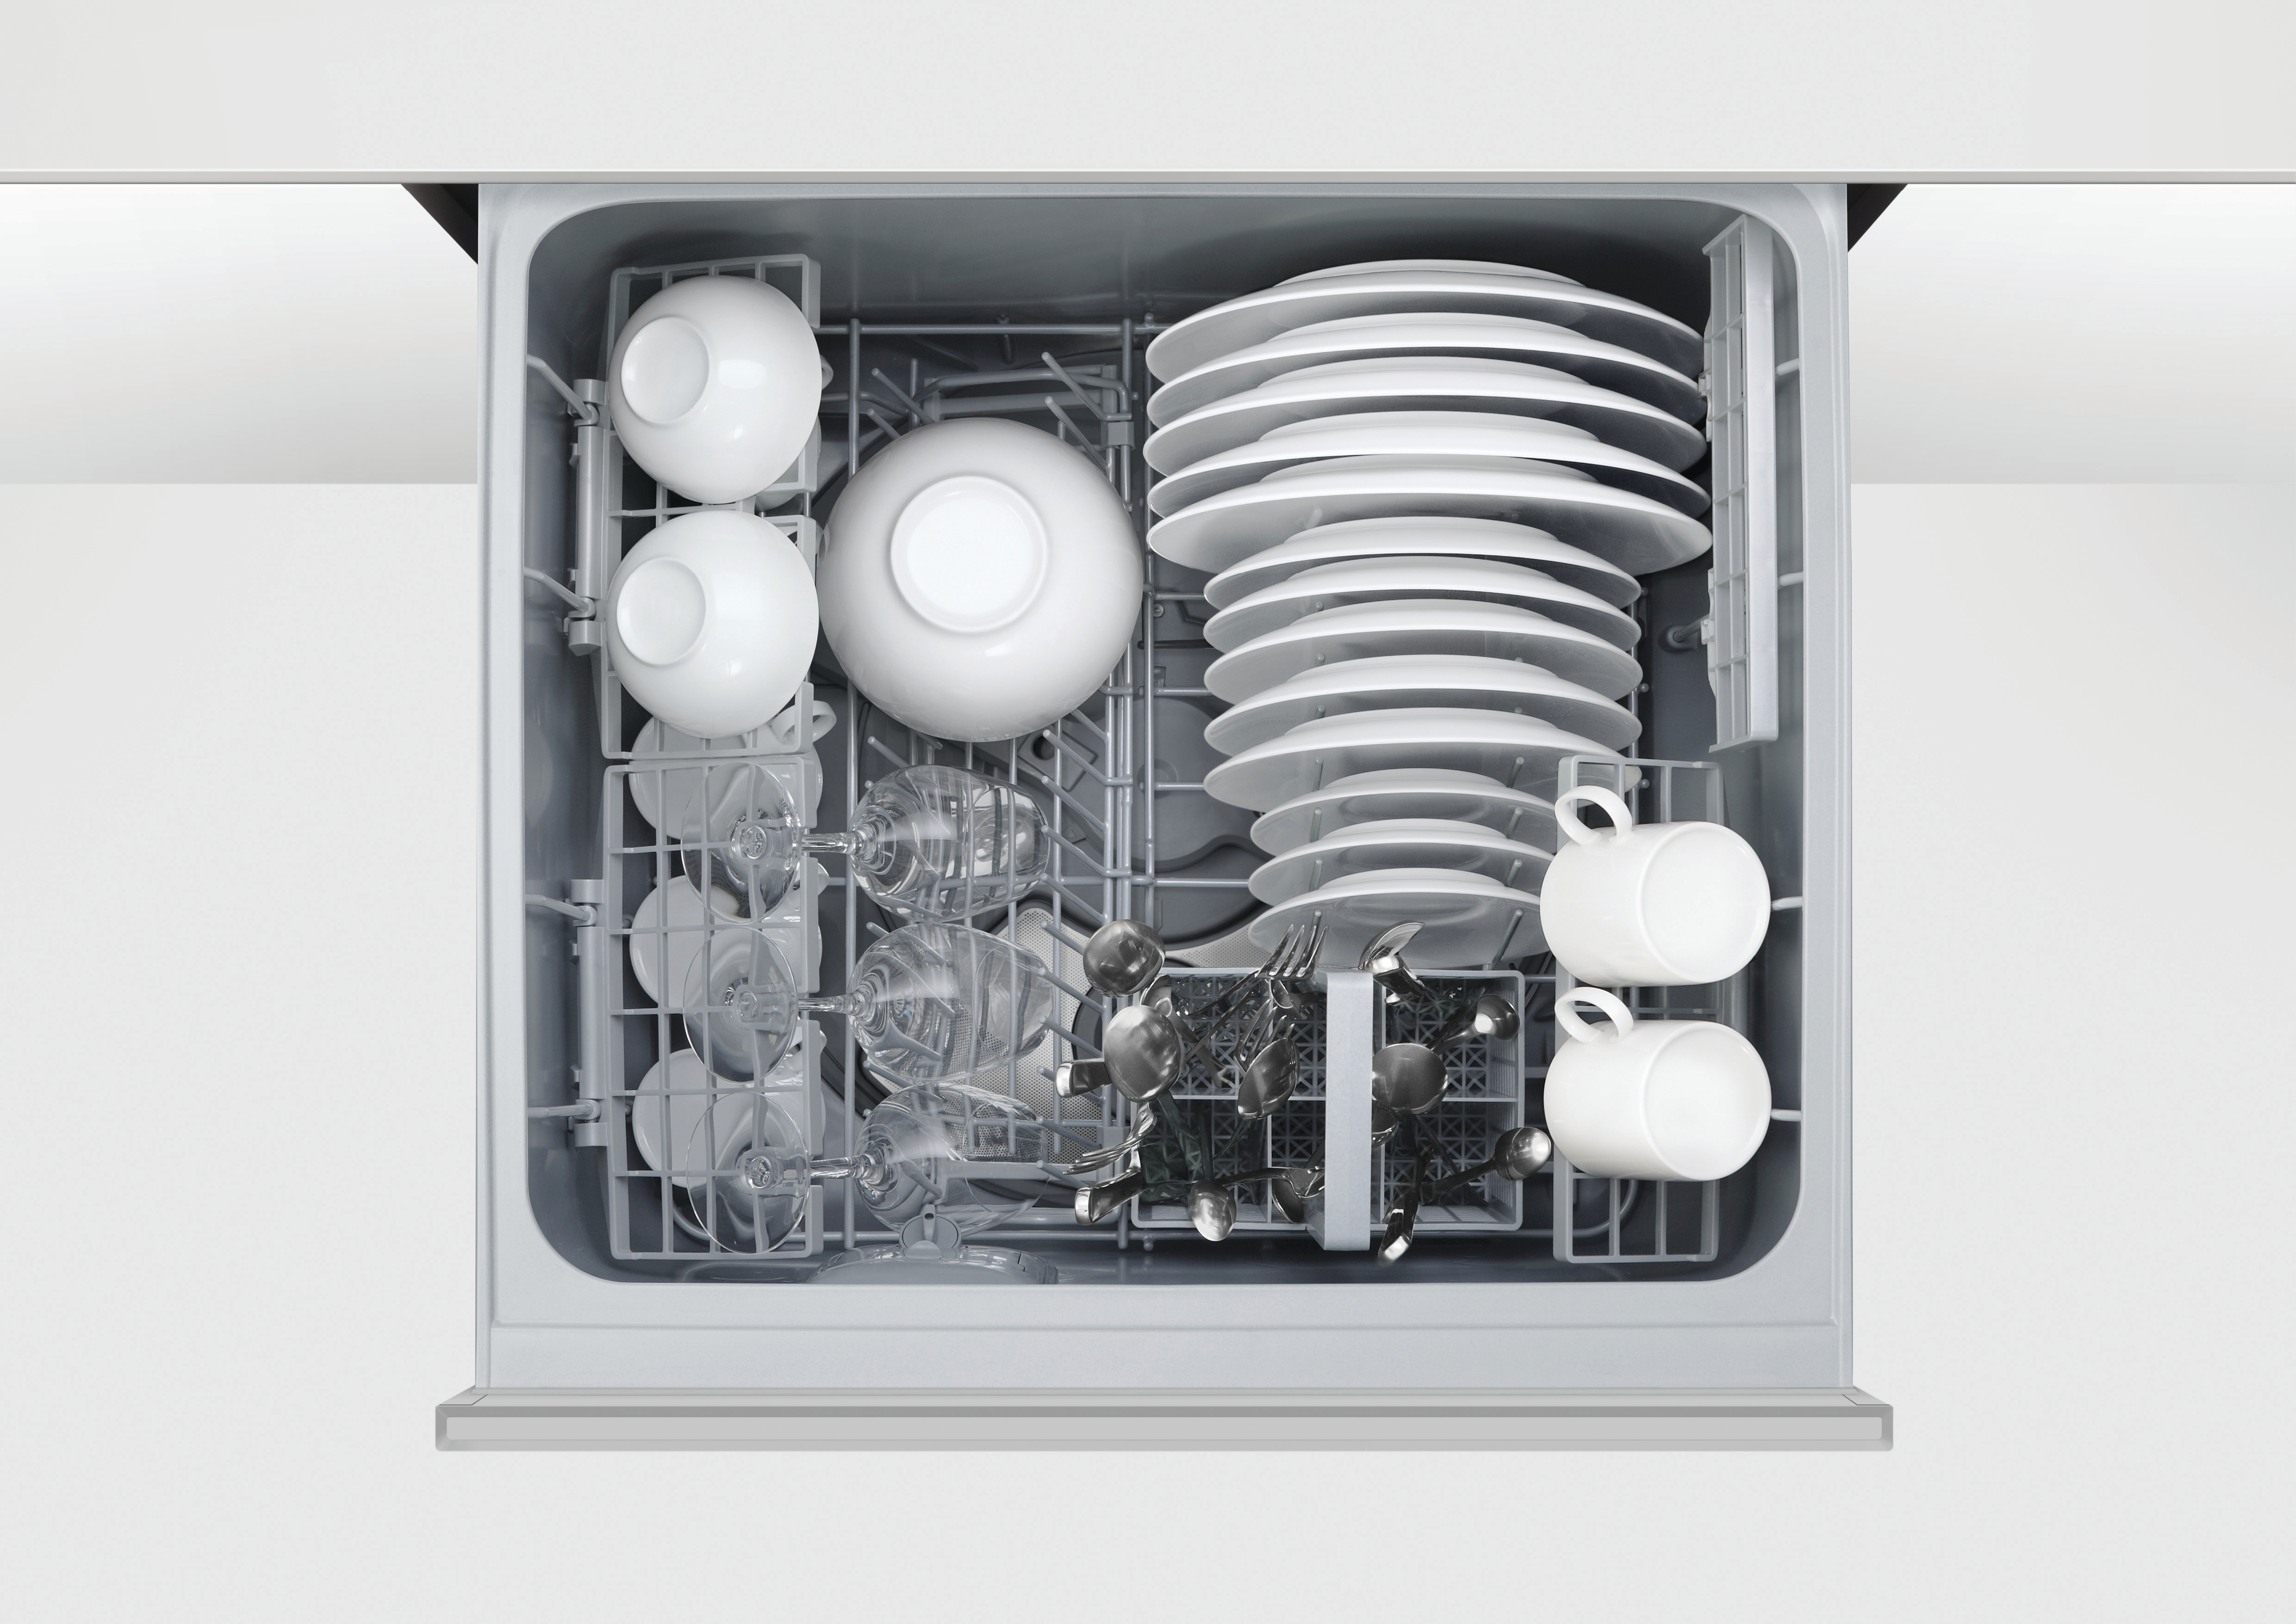 Fisher & Paykel dishwasher drawer